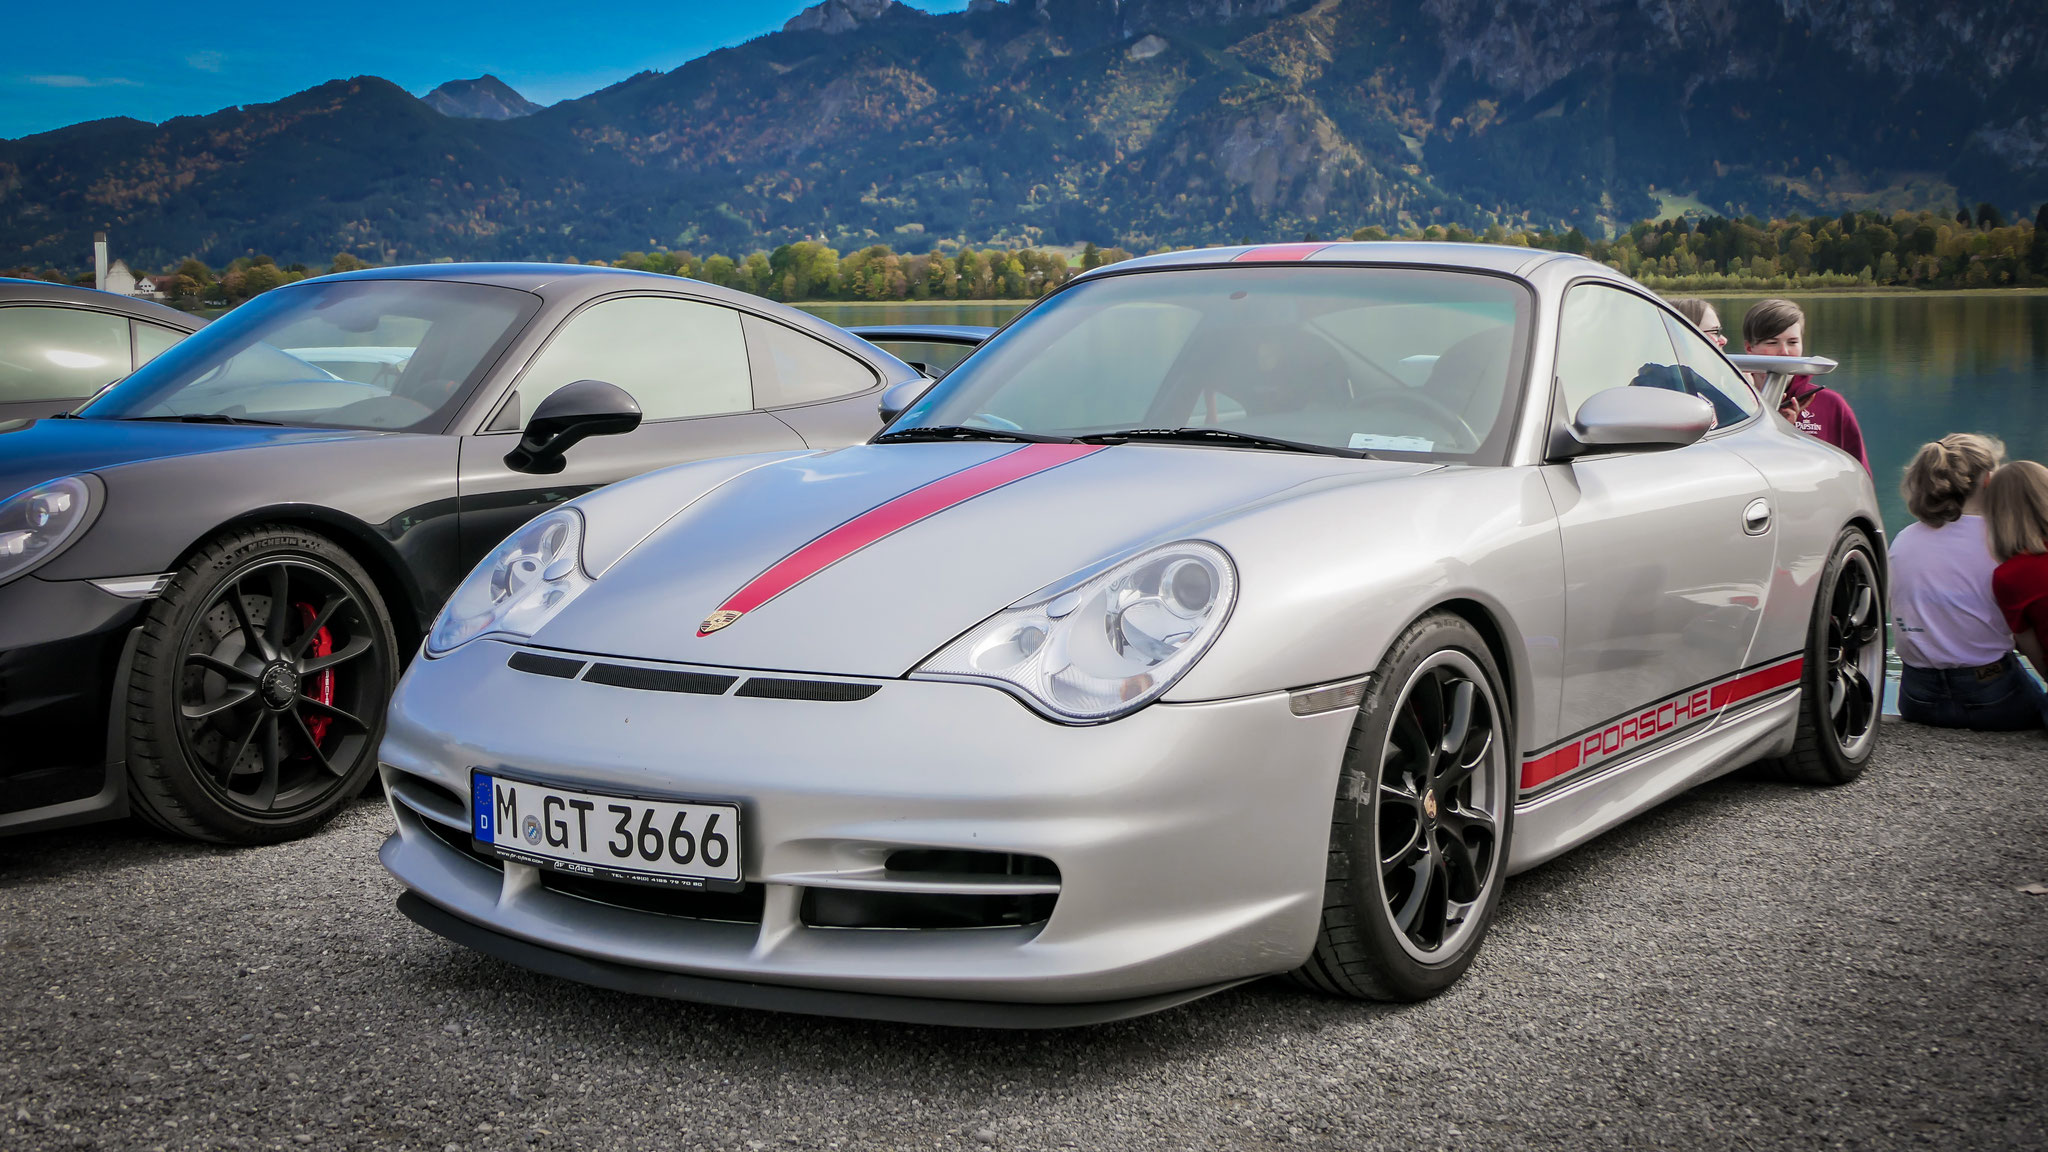 Porsche GT3 996 - M-GT3666